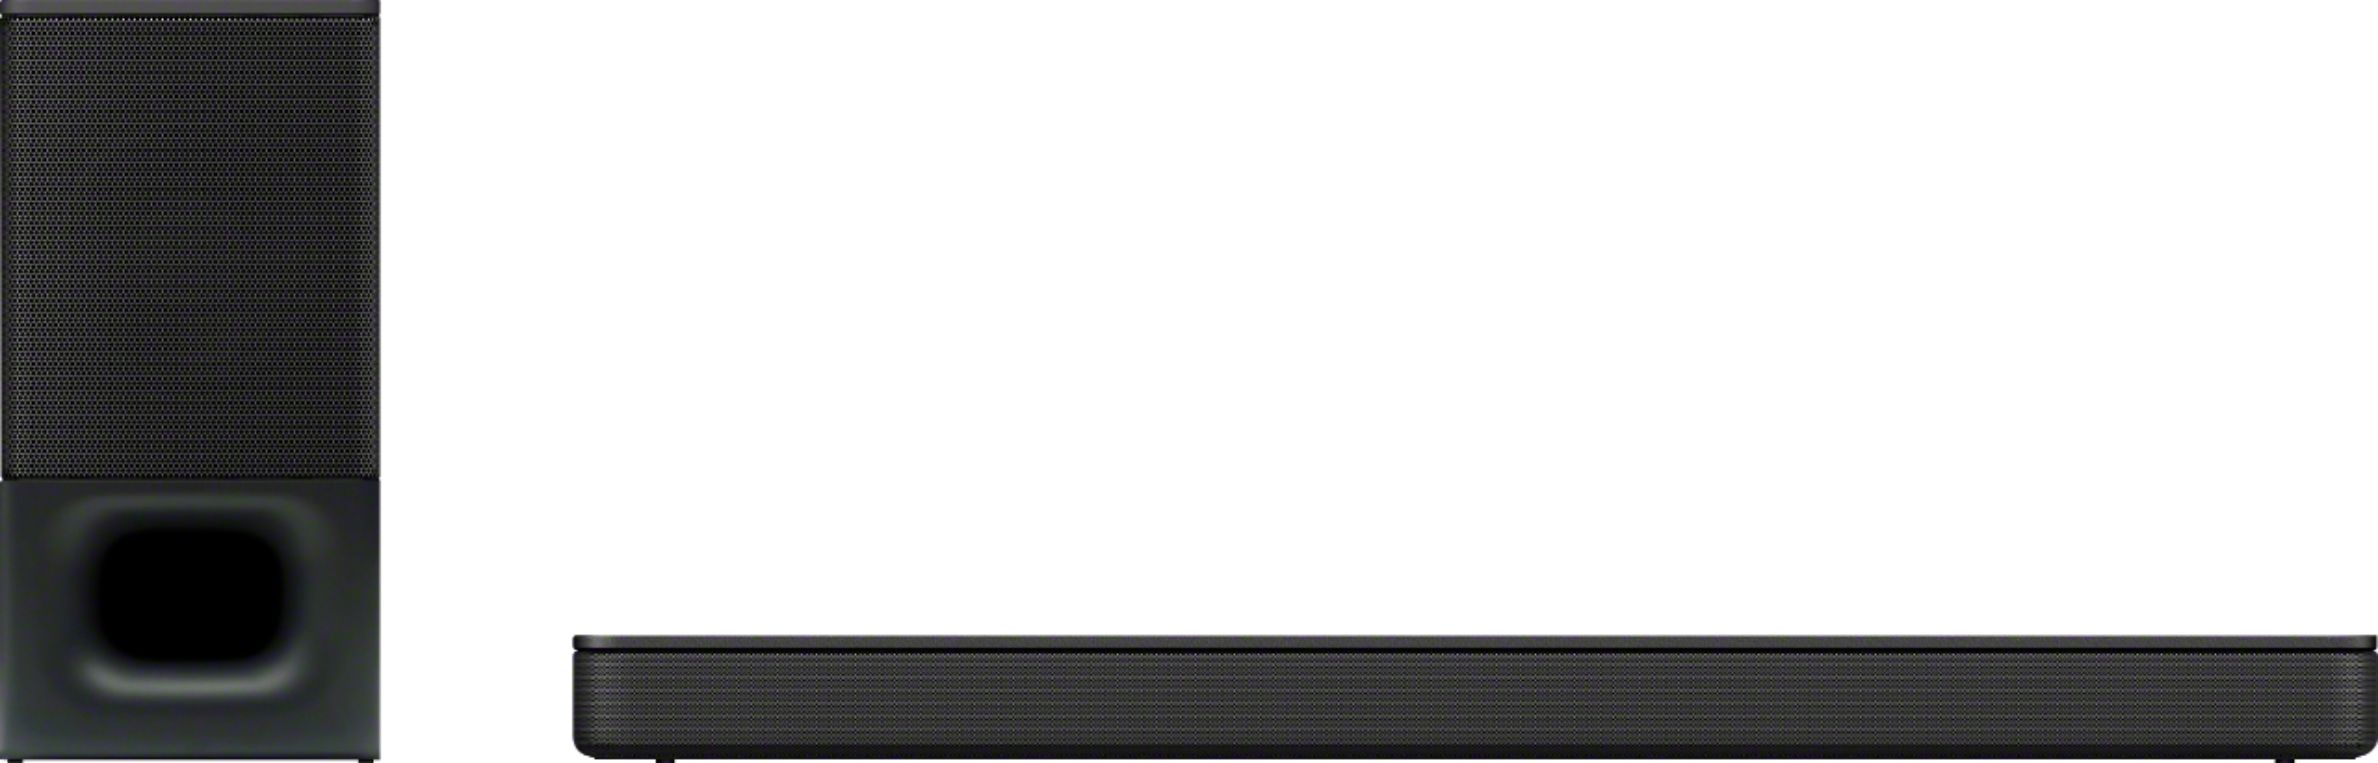 kalender Almægtig Børnecenter Sony HT-S350 2.1 Channel Soundbar with Wireless Subwoofer and Dolby Digital  Black HTS350 - Best Buy